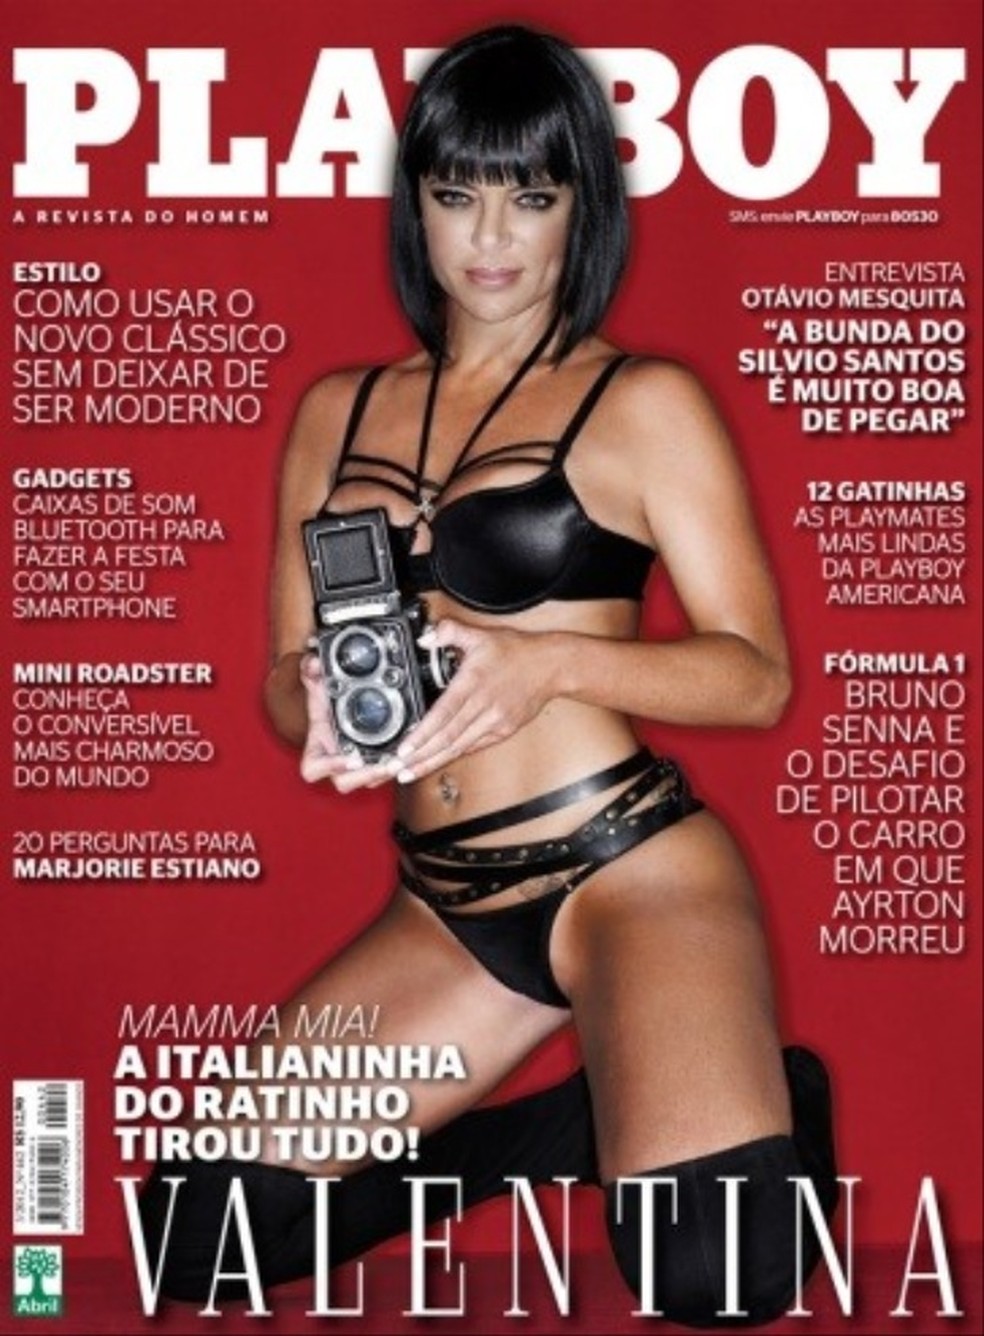 Valentina Francavilla foi capa da Playboy em março de 2012 — Foto: Divulgação